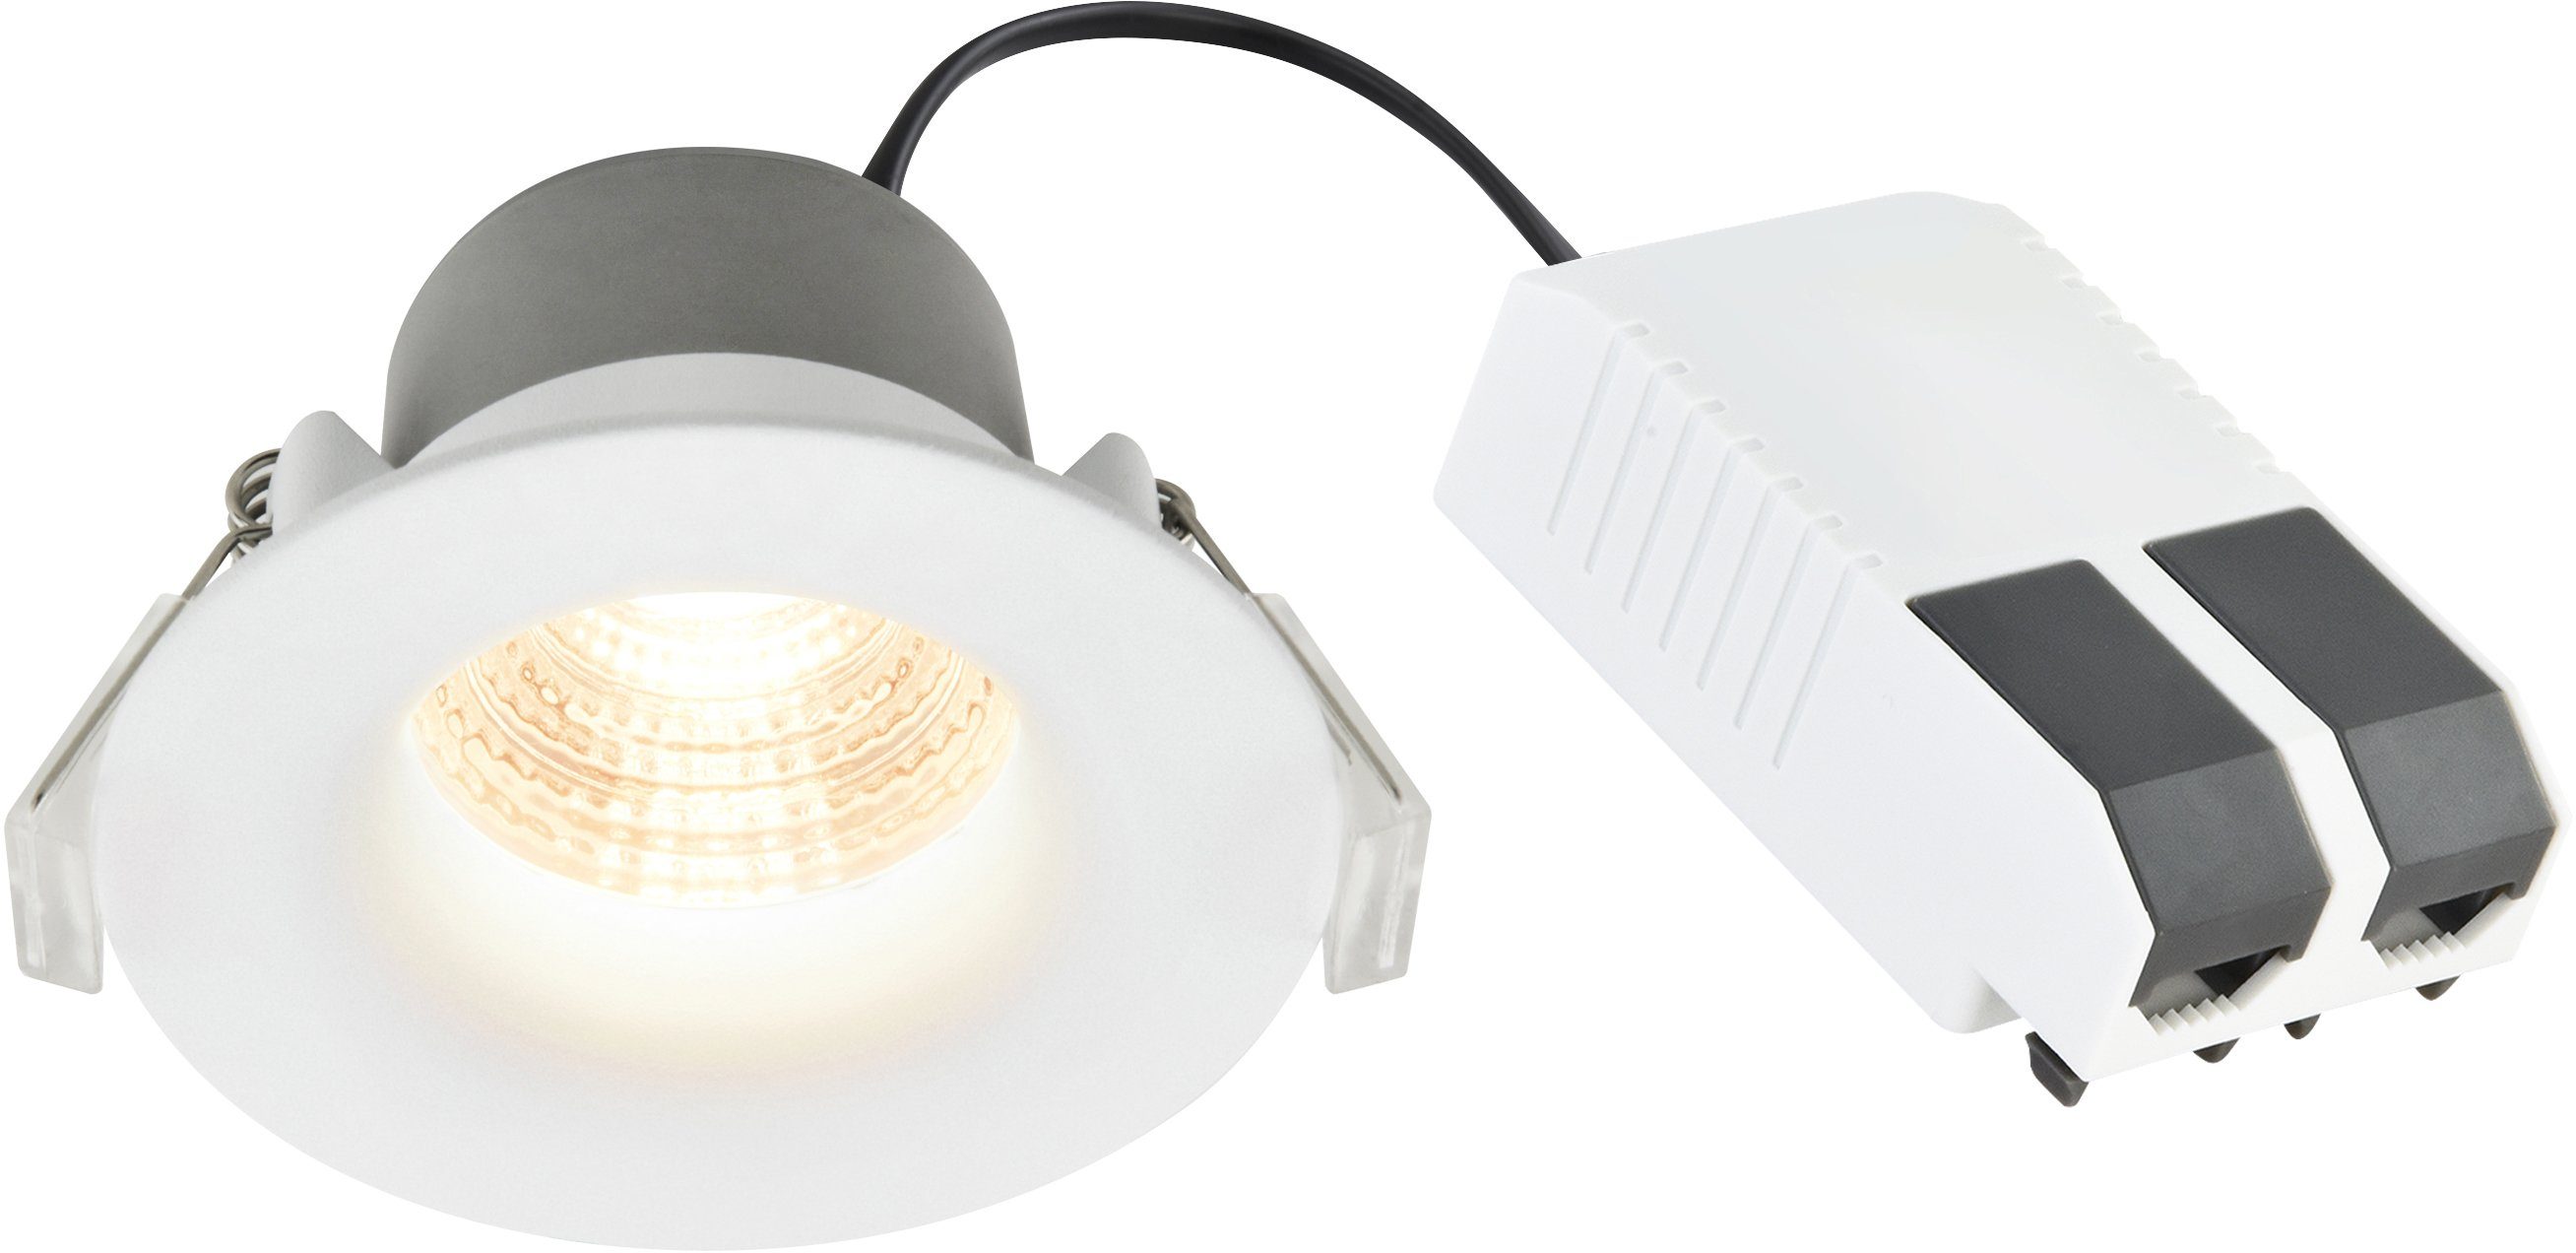 Nordlux Deckenstrahler Starke, LED fest integriert, Warmweiß, inkl. 6,1W LED,  450 Lumen, Dimmbar, 20.000h Lebensdauer